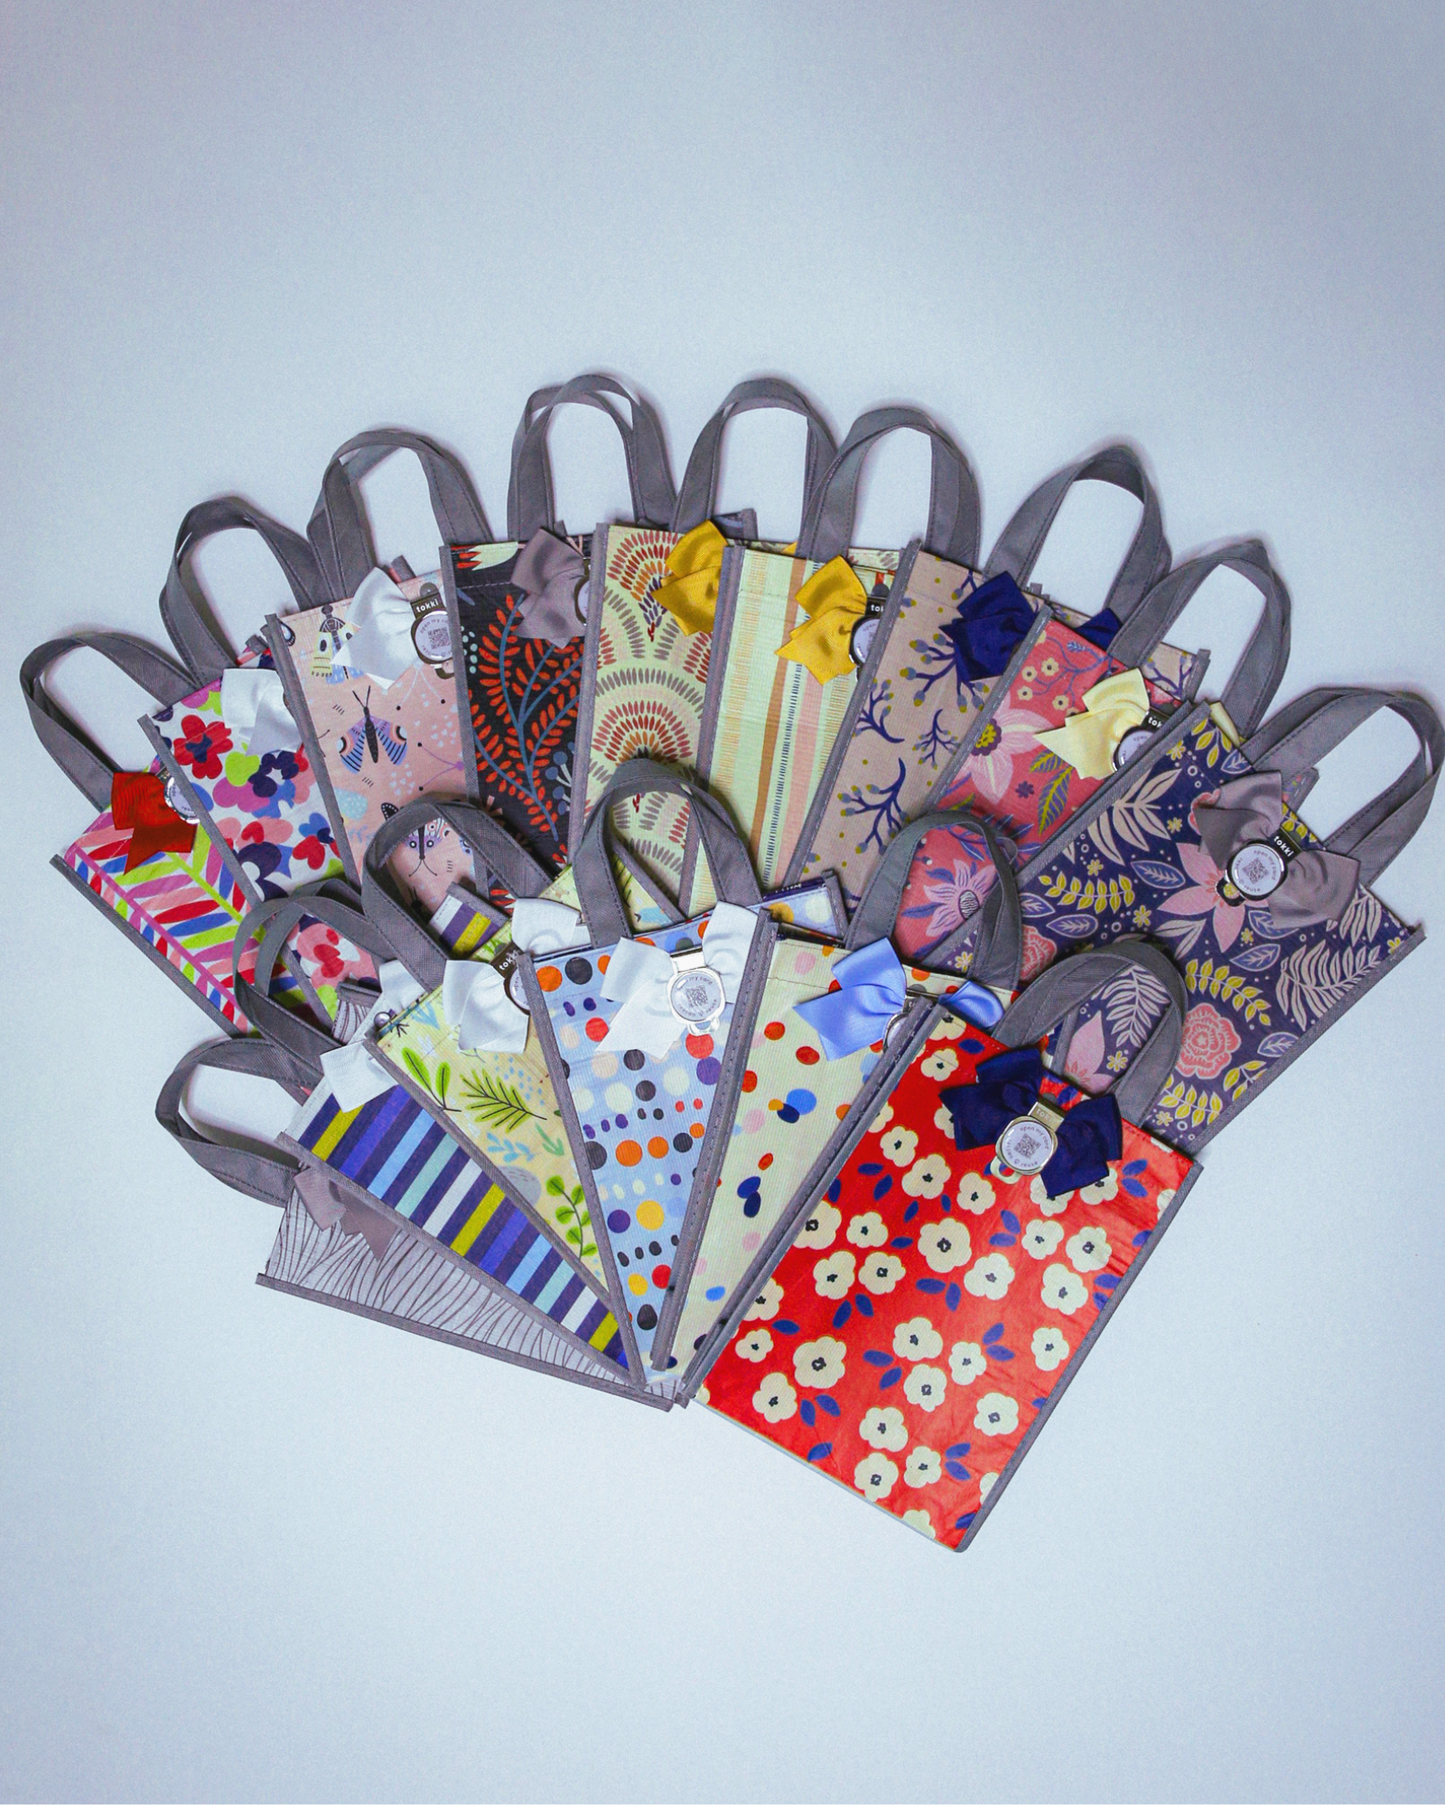 Bestsellers Bundle | QR Card + Gift Bag Set | 15 Medium Bags